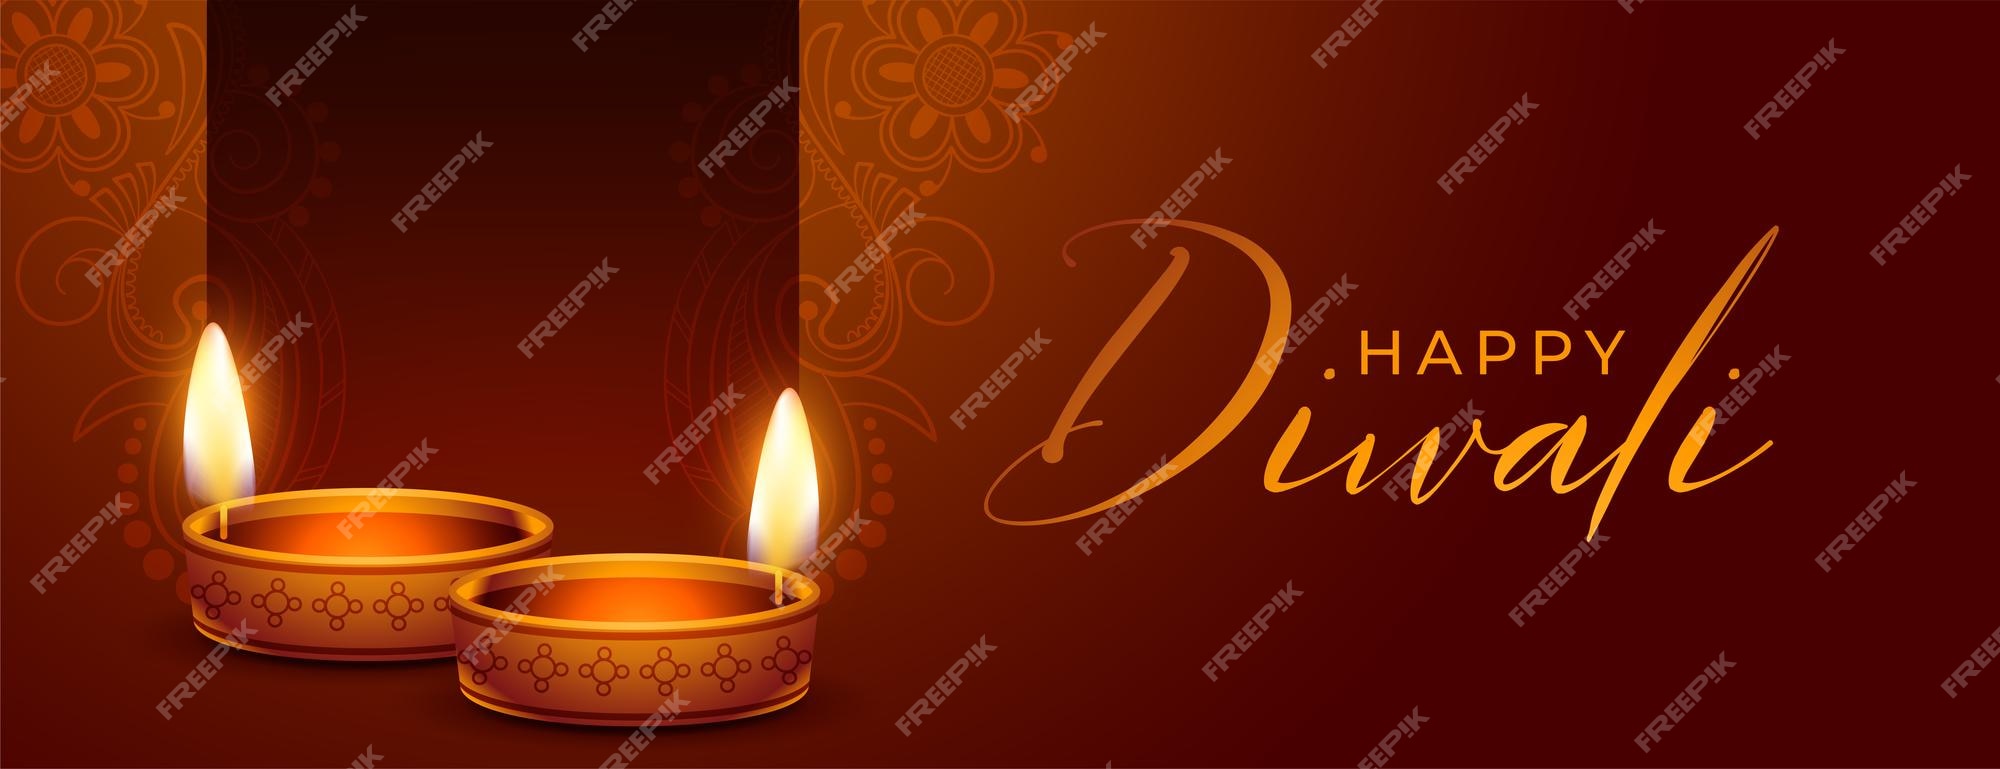 Page 16 | Diwali Light Images - Free Download on Freepik